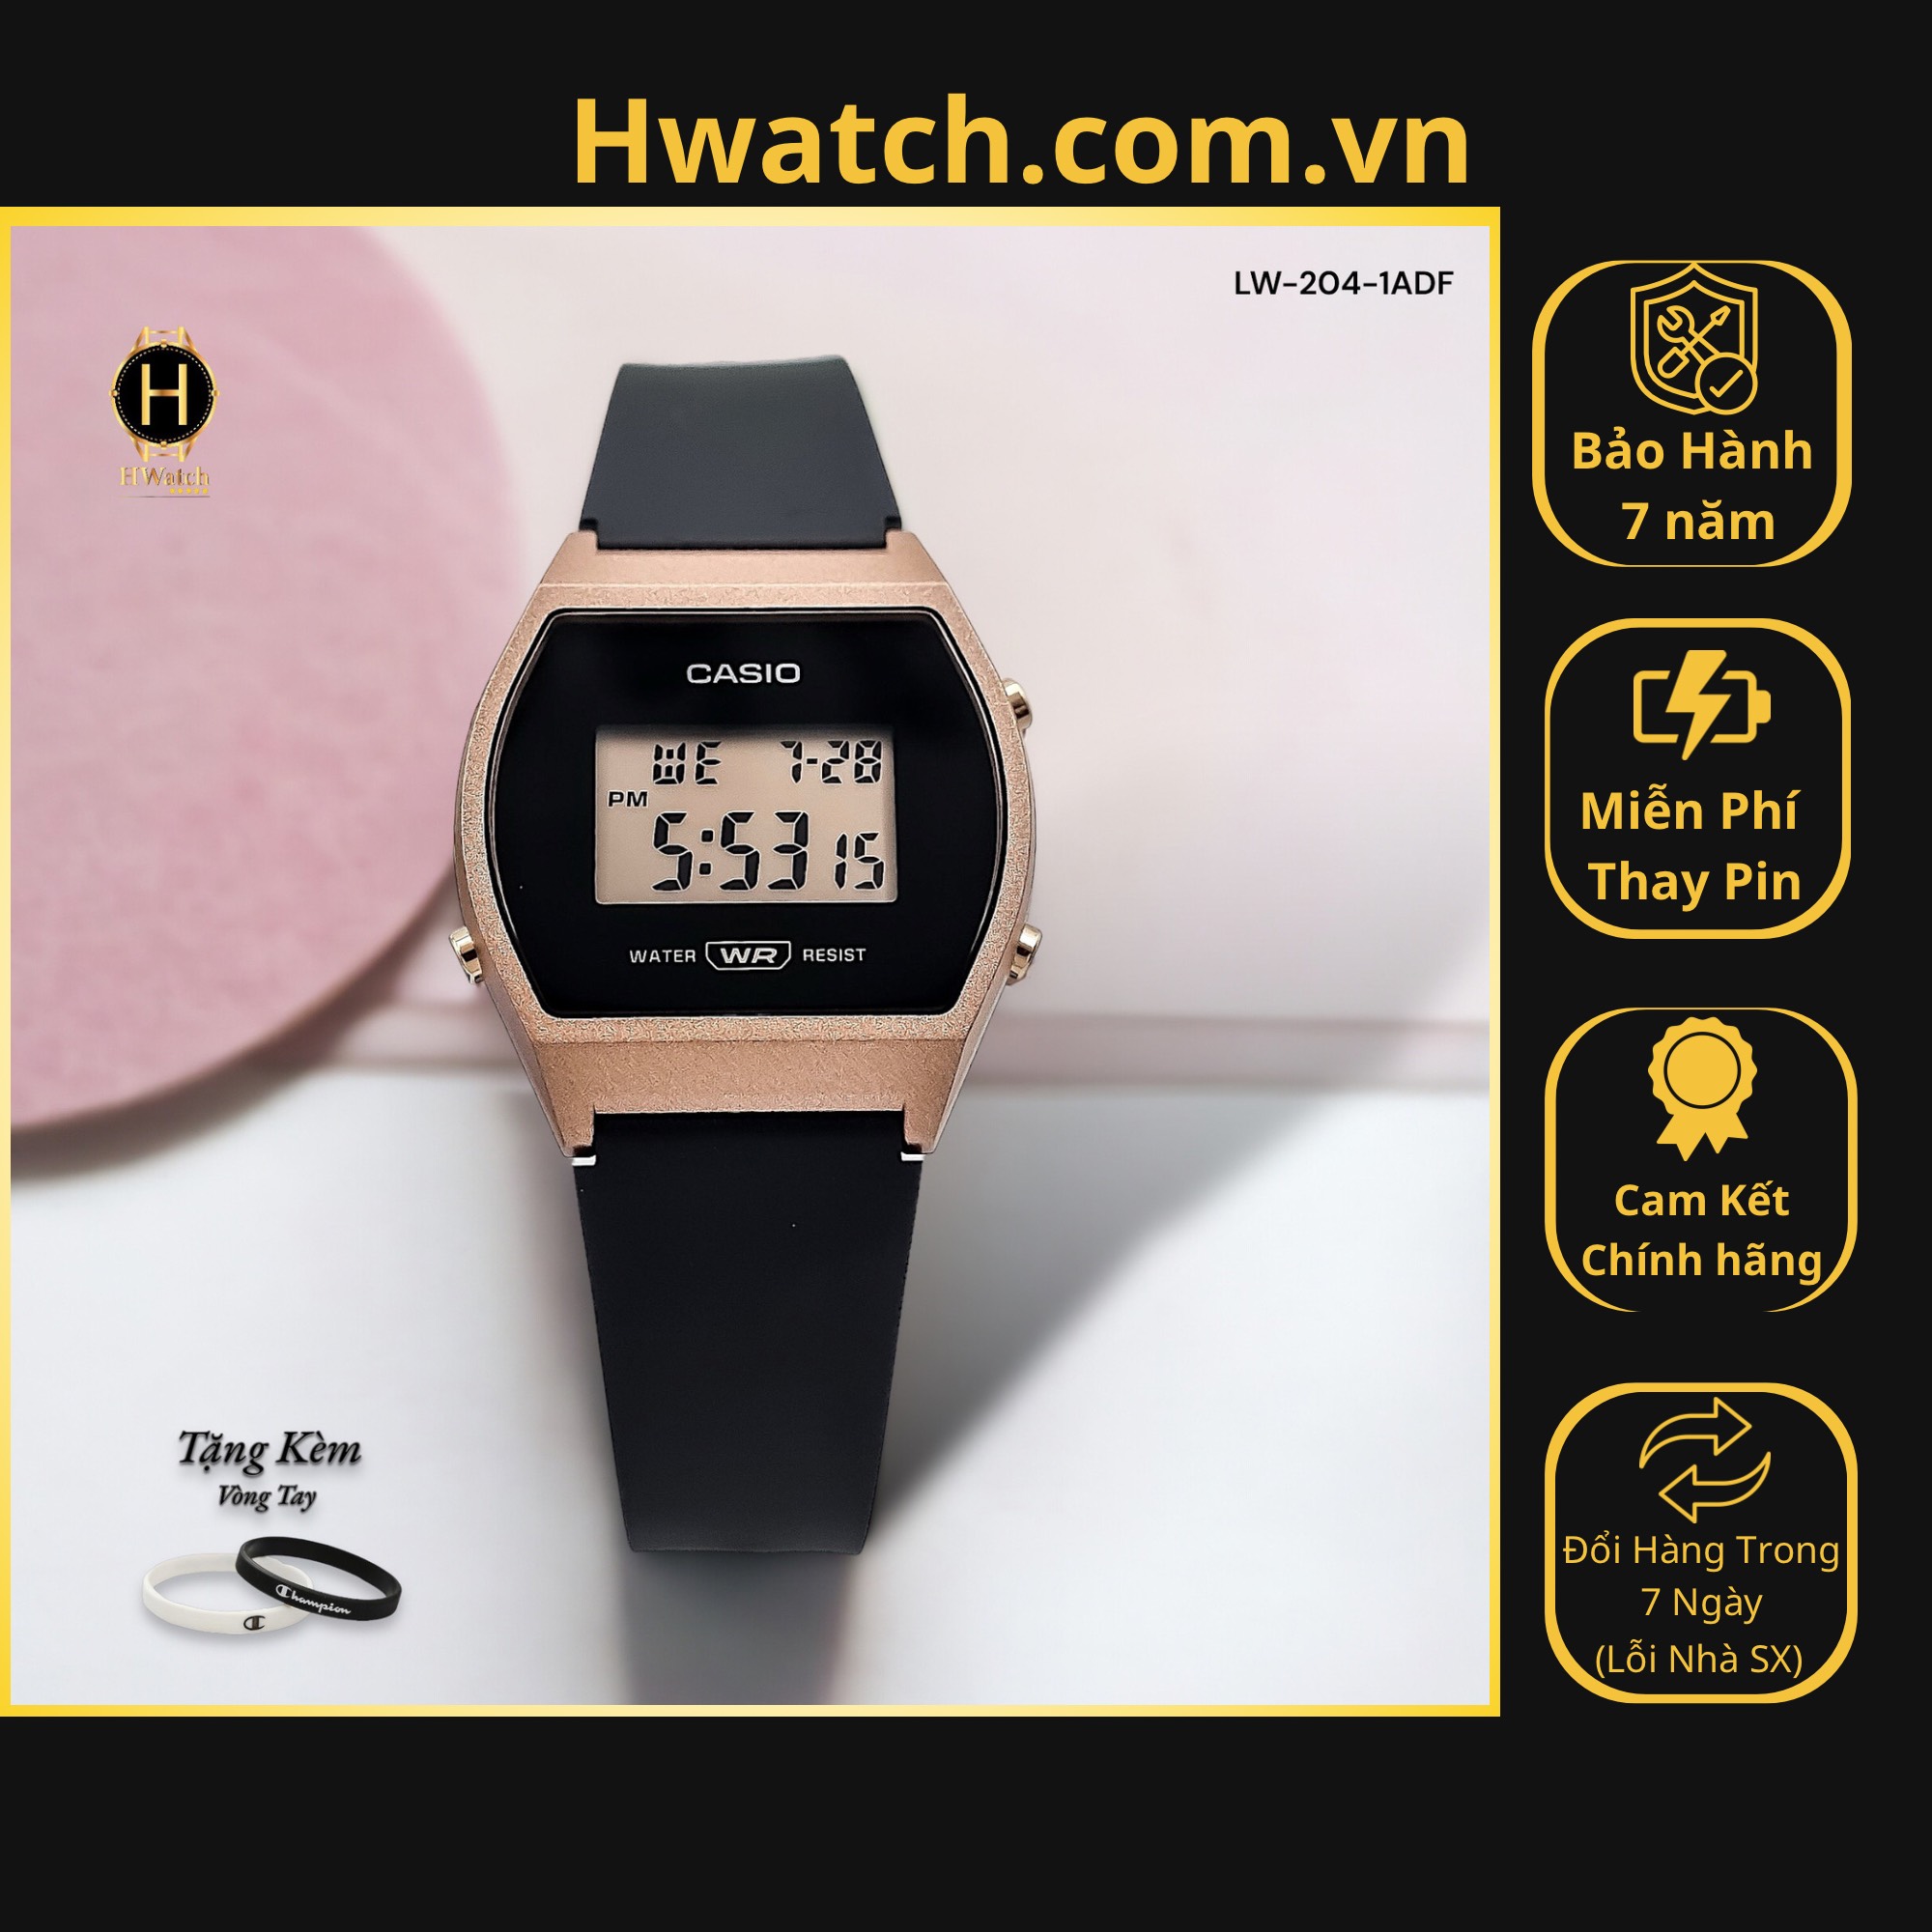 [Có sẵn] [Chính hãng] Đồng Hồ Nữ Casio LW-204-1ADF Mặt Đen Viền Hồng Hwatch.com.vn